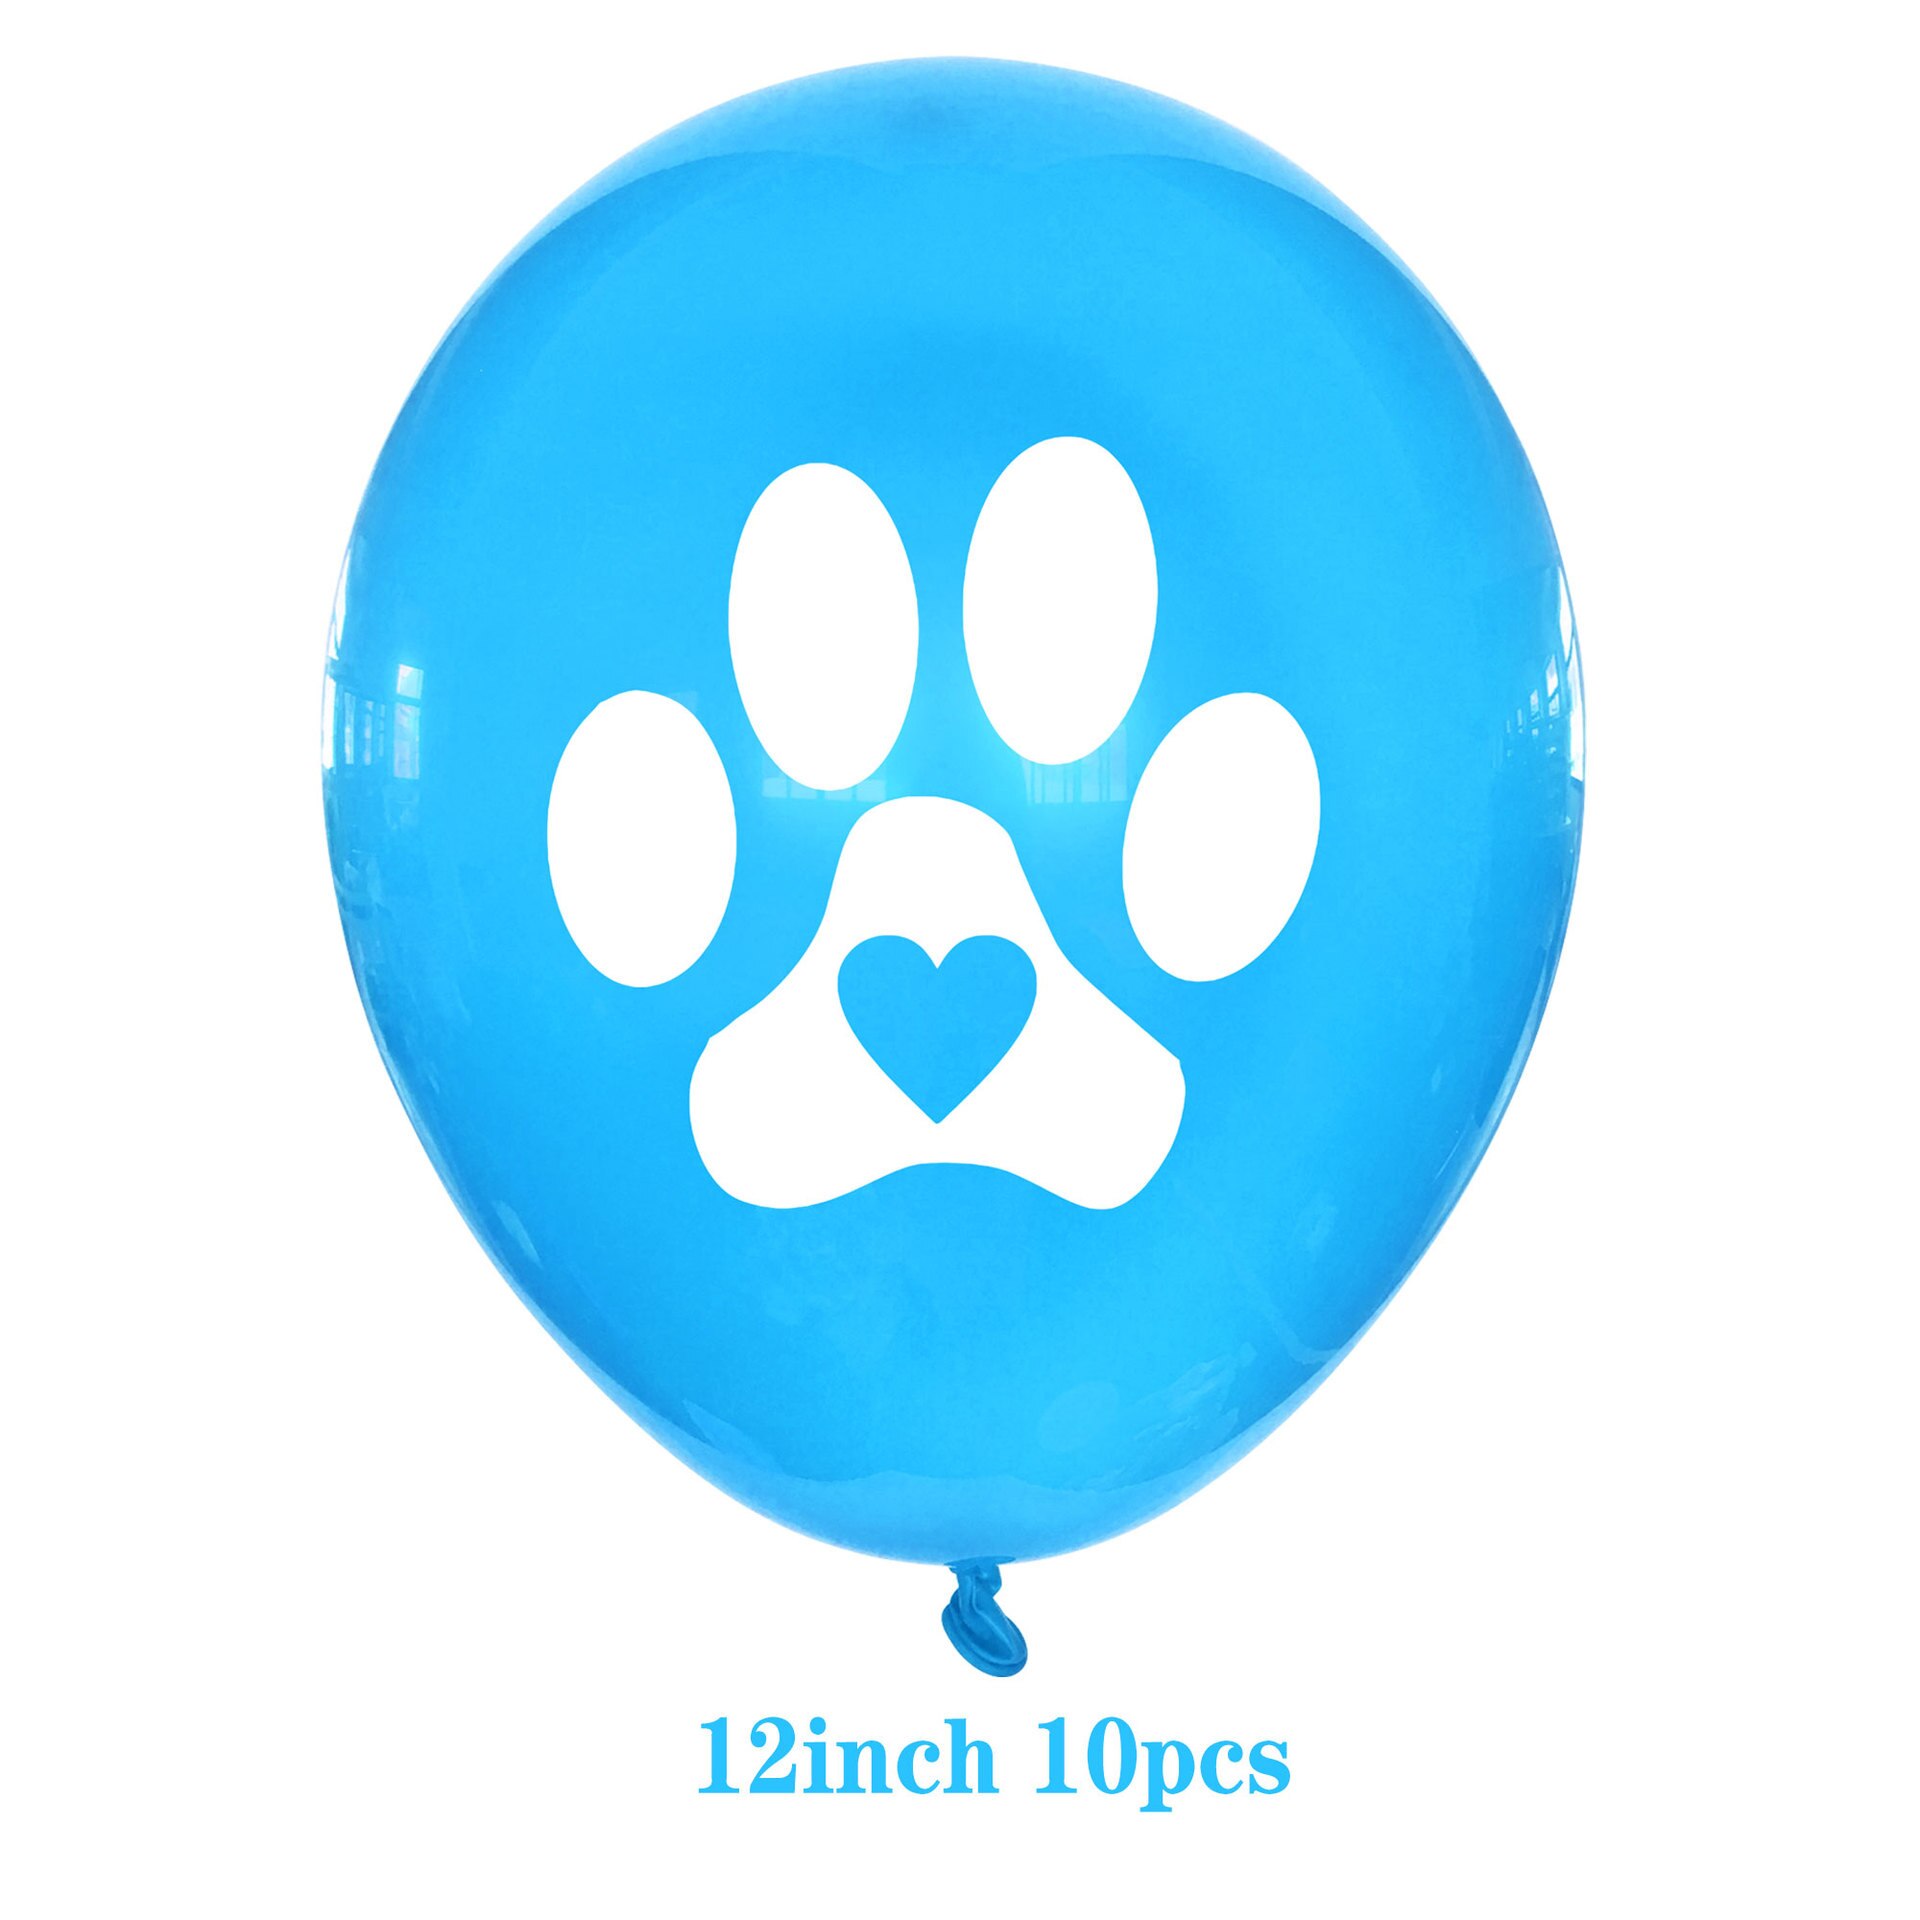 10 Stks/partij Blauw Footprint 12Inch Latex Ballonnen Cartoon Hond Poot Impulsen Gelukkige Verjaardag Decoratie Set Kids Jongen Speelgoed